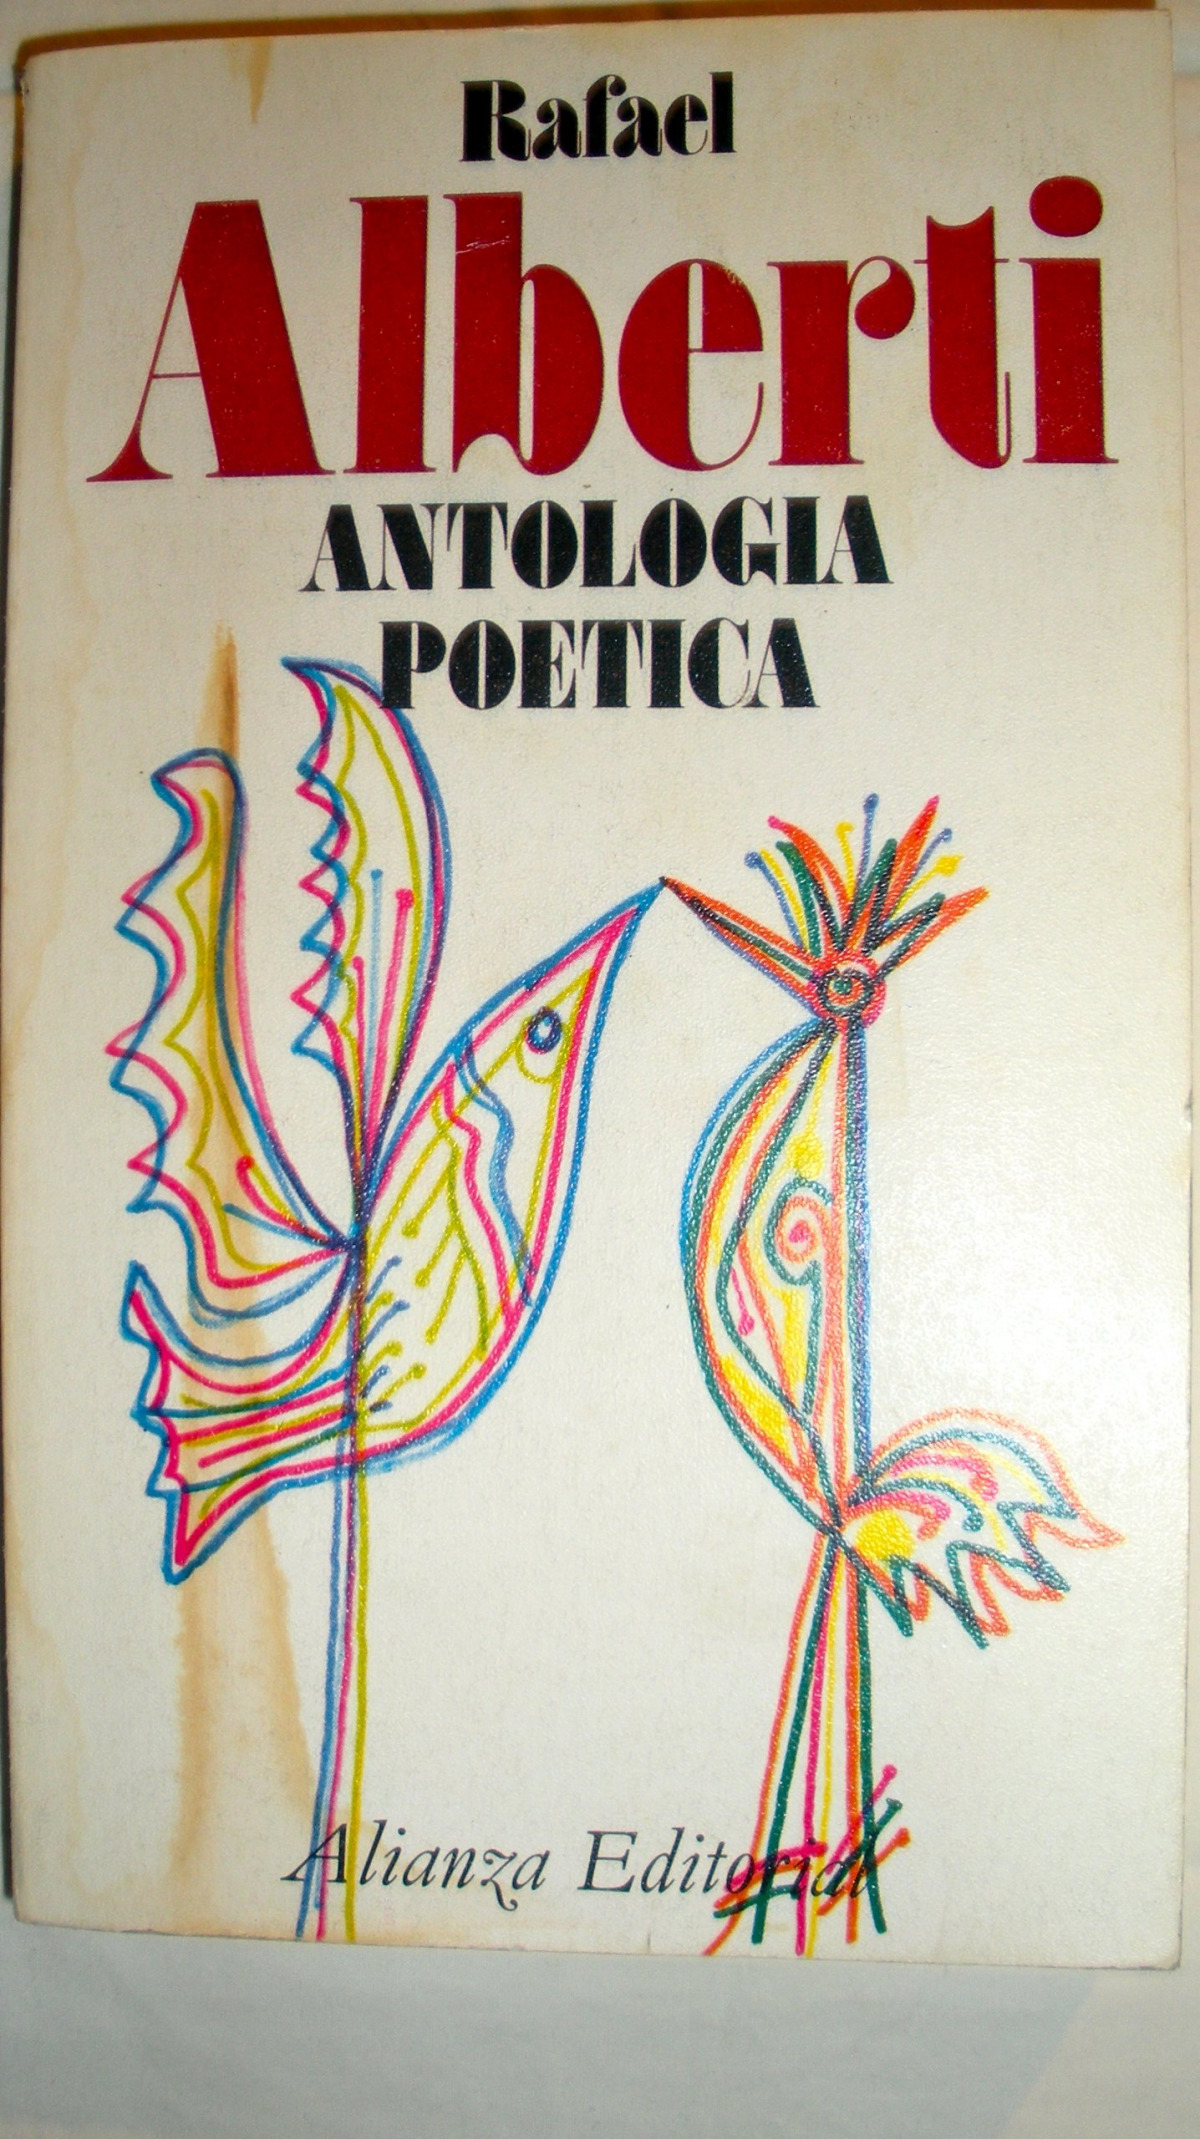 ANTOLOGíA POéTICA - Alberti, Rafael